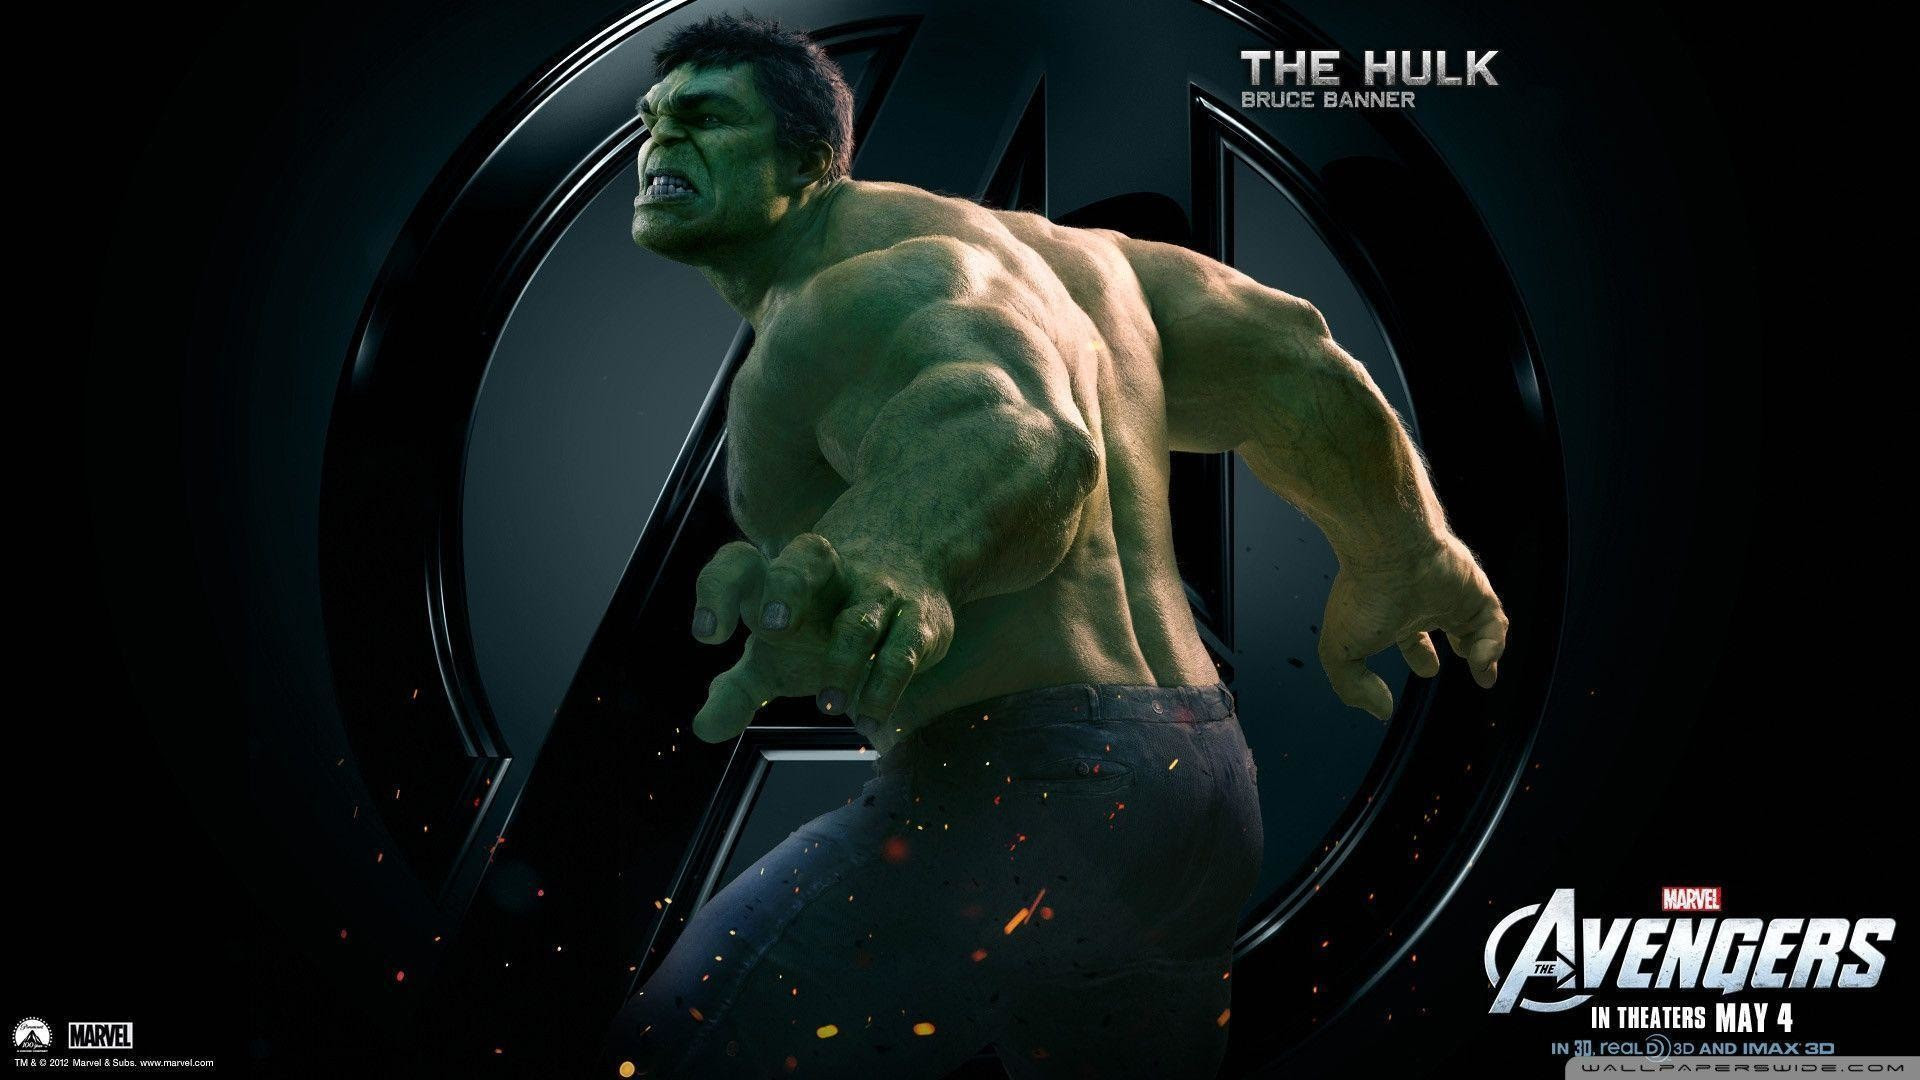  Keren  30 Gambar  Kartun  Hulk  3d Kumpulan Gambar  Kartun 